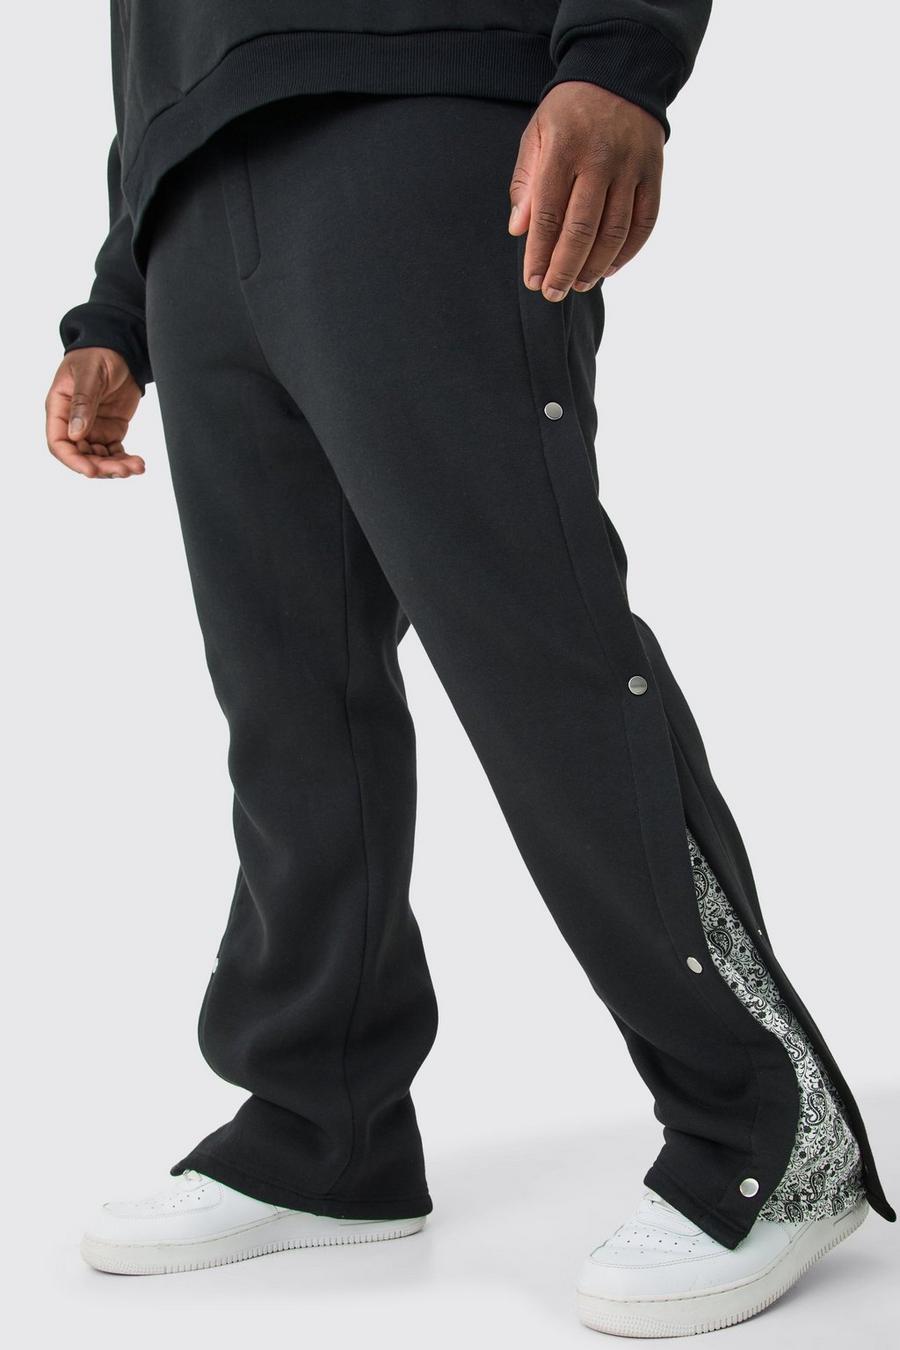 Pantalón deportivo Plus holgado con panel lateral y botones de presión, Black